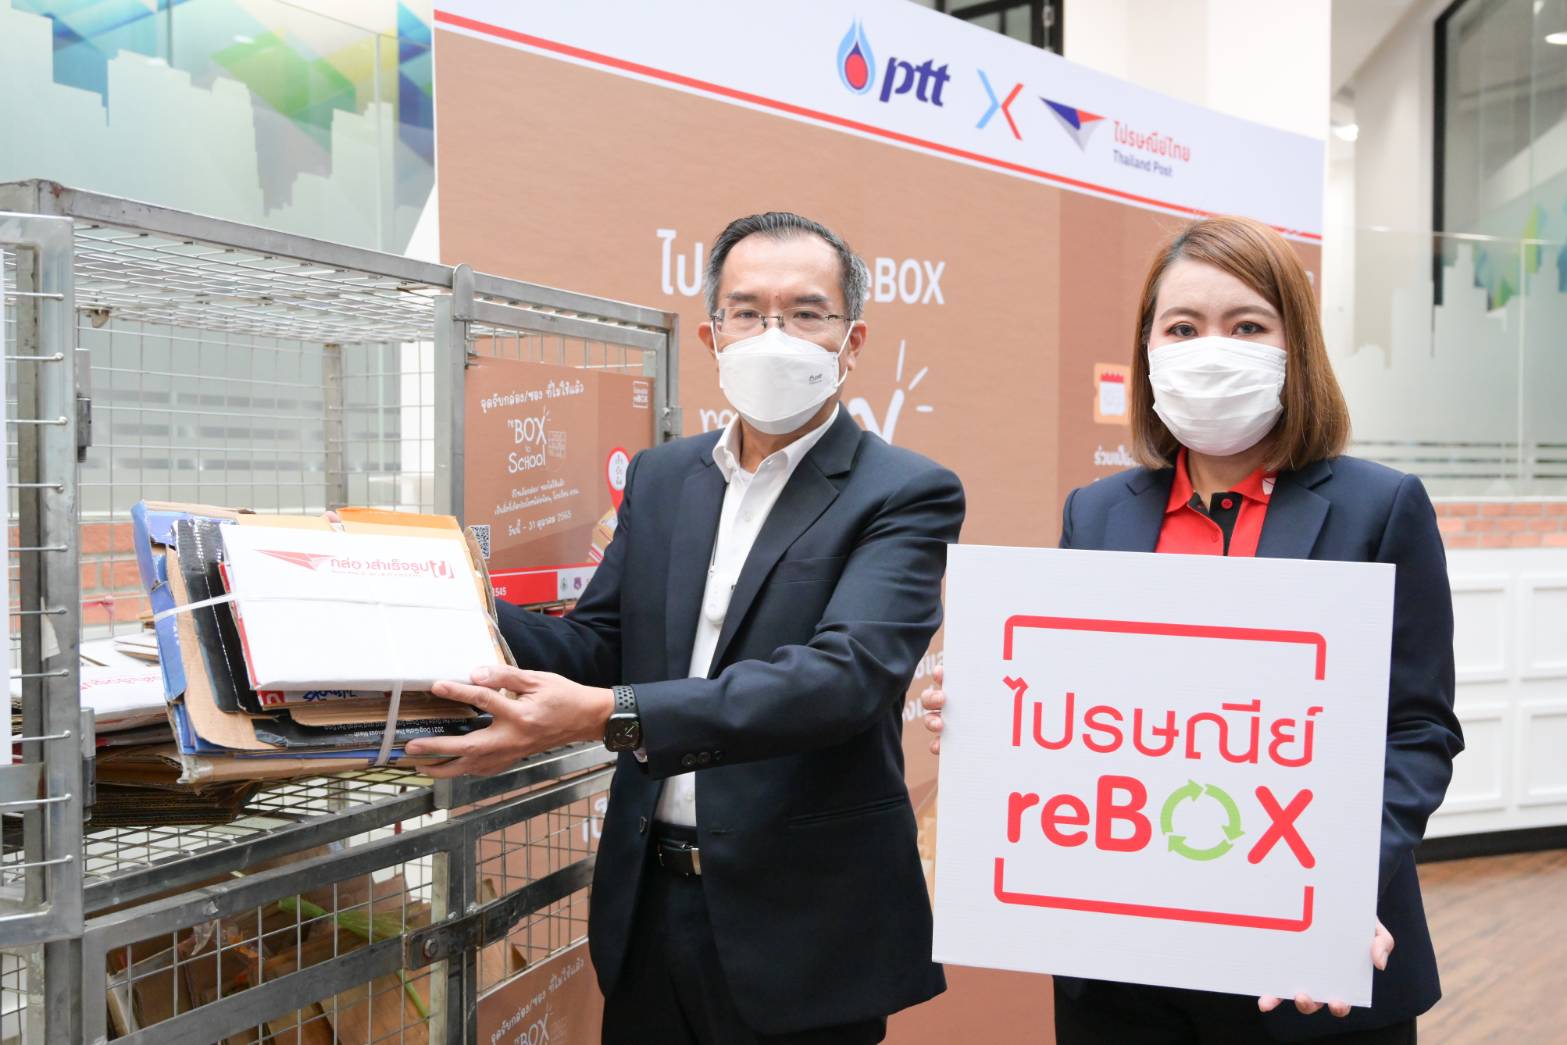 ไปรษณีย์ไทย X ปตท. ขยายพื้นที่เพิ่มความสะดวกเอาใจสายกรีน เปิดจุดรับกล่อง–ซองไม่ใช้แล้วที่จุดบริการ NGV 48 แห่งทั่วไทย